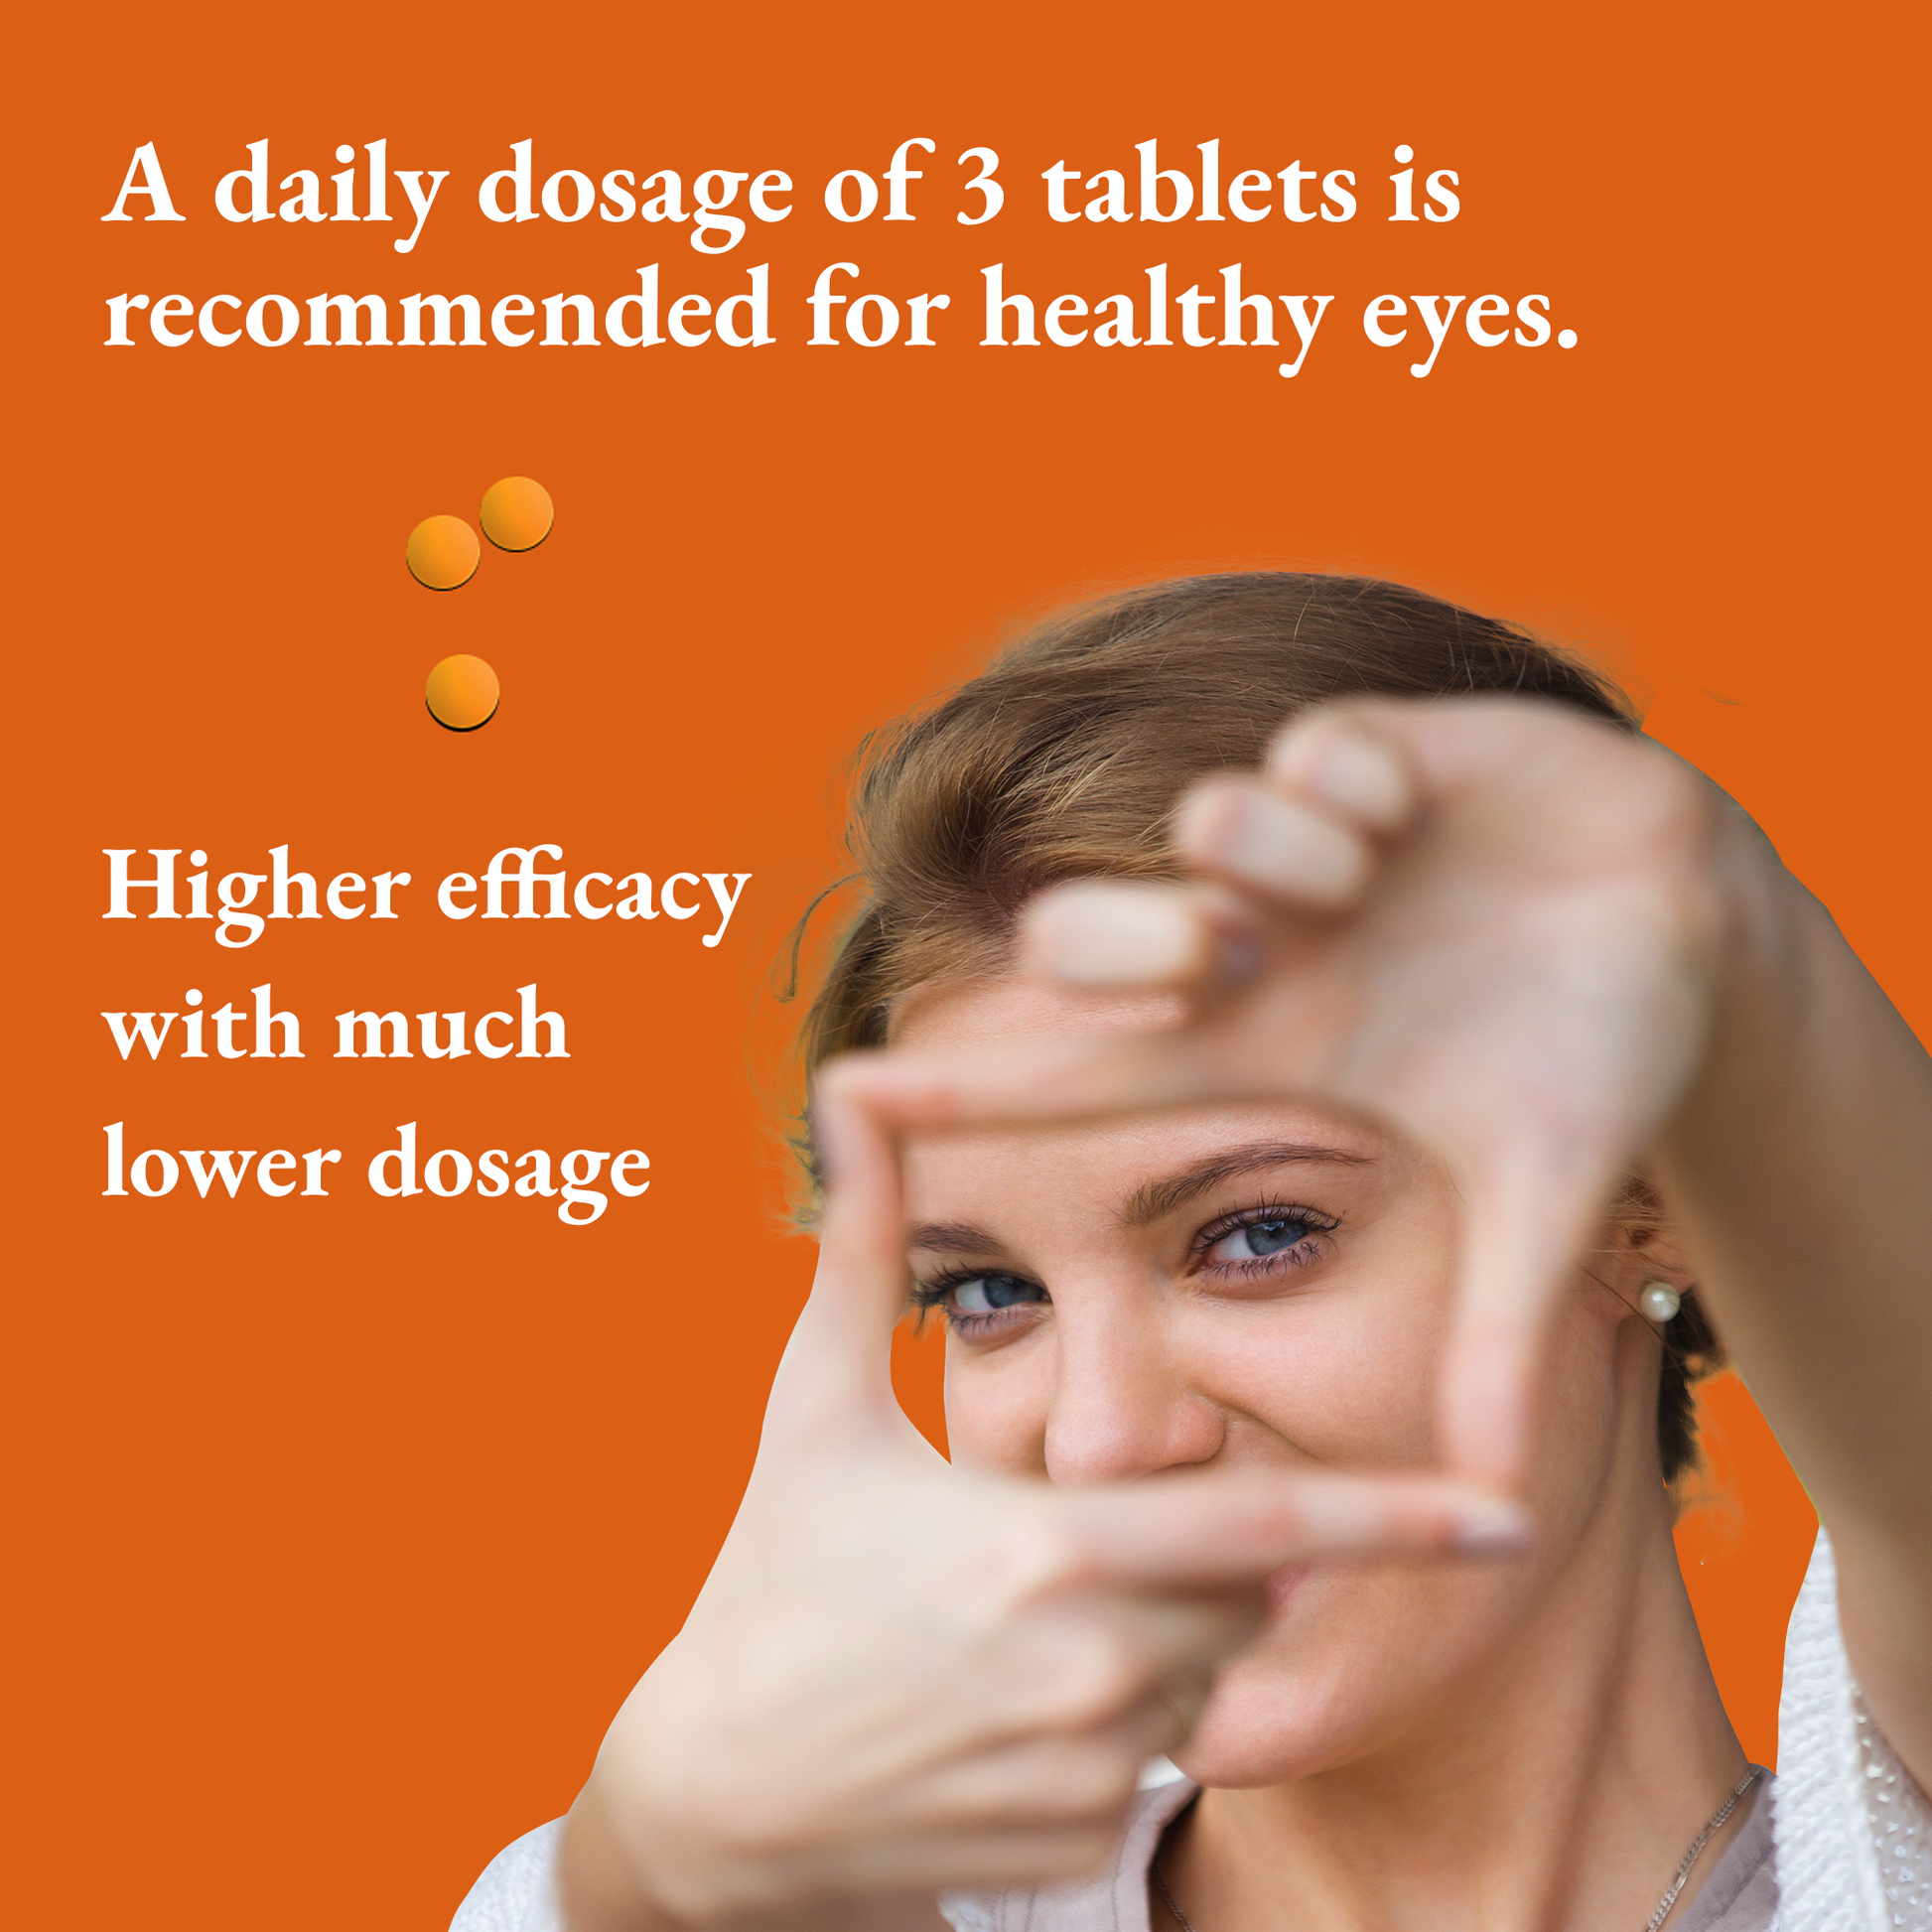 eye care tablets dosage information